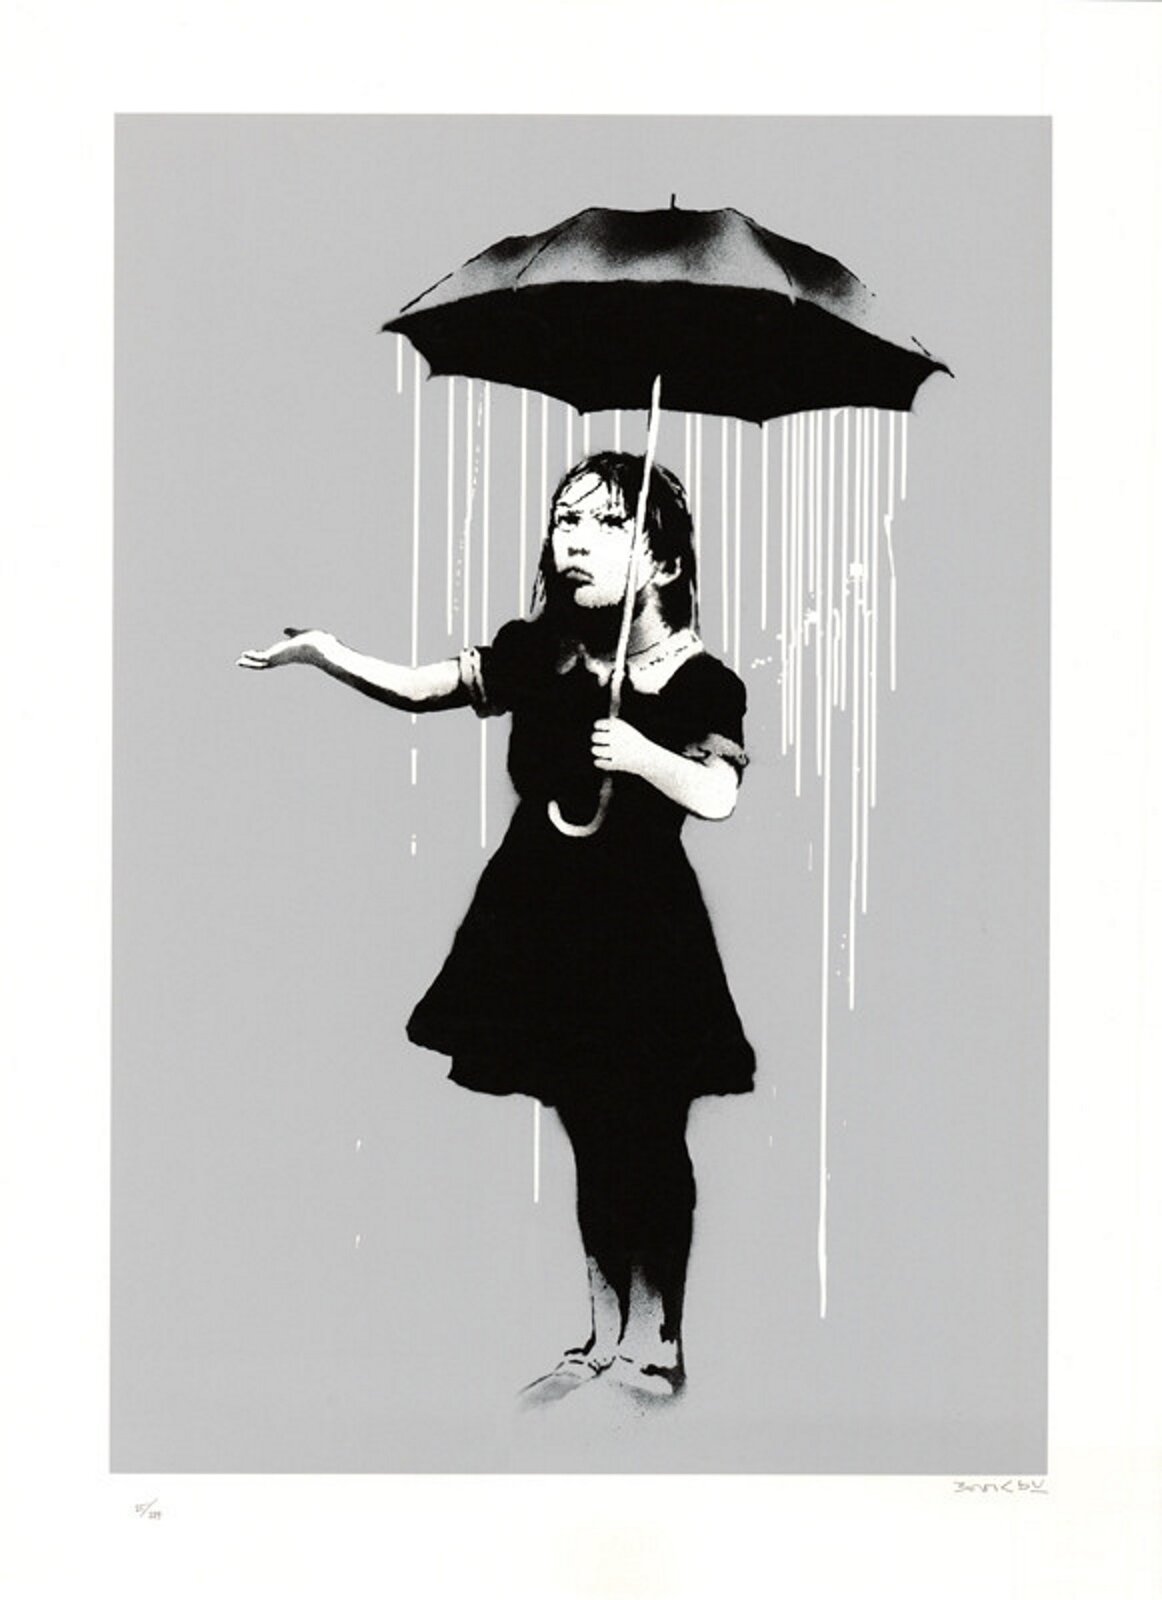 Ilustracja przedstawia graffiti Banksy'ego. Ukazuje stojącą pod parasolem dziewczynkę. Strumienie deszczu spływaj z parasola. Dziewczynka wyciąga rękę poza strugi deszczu.